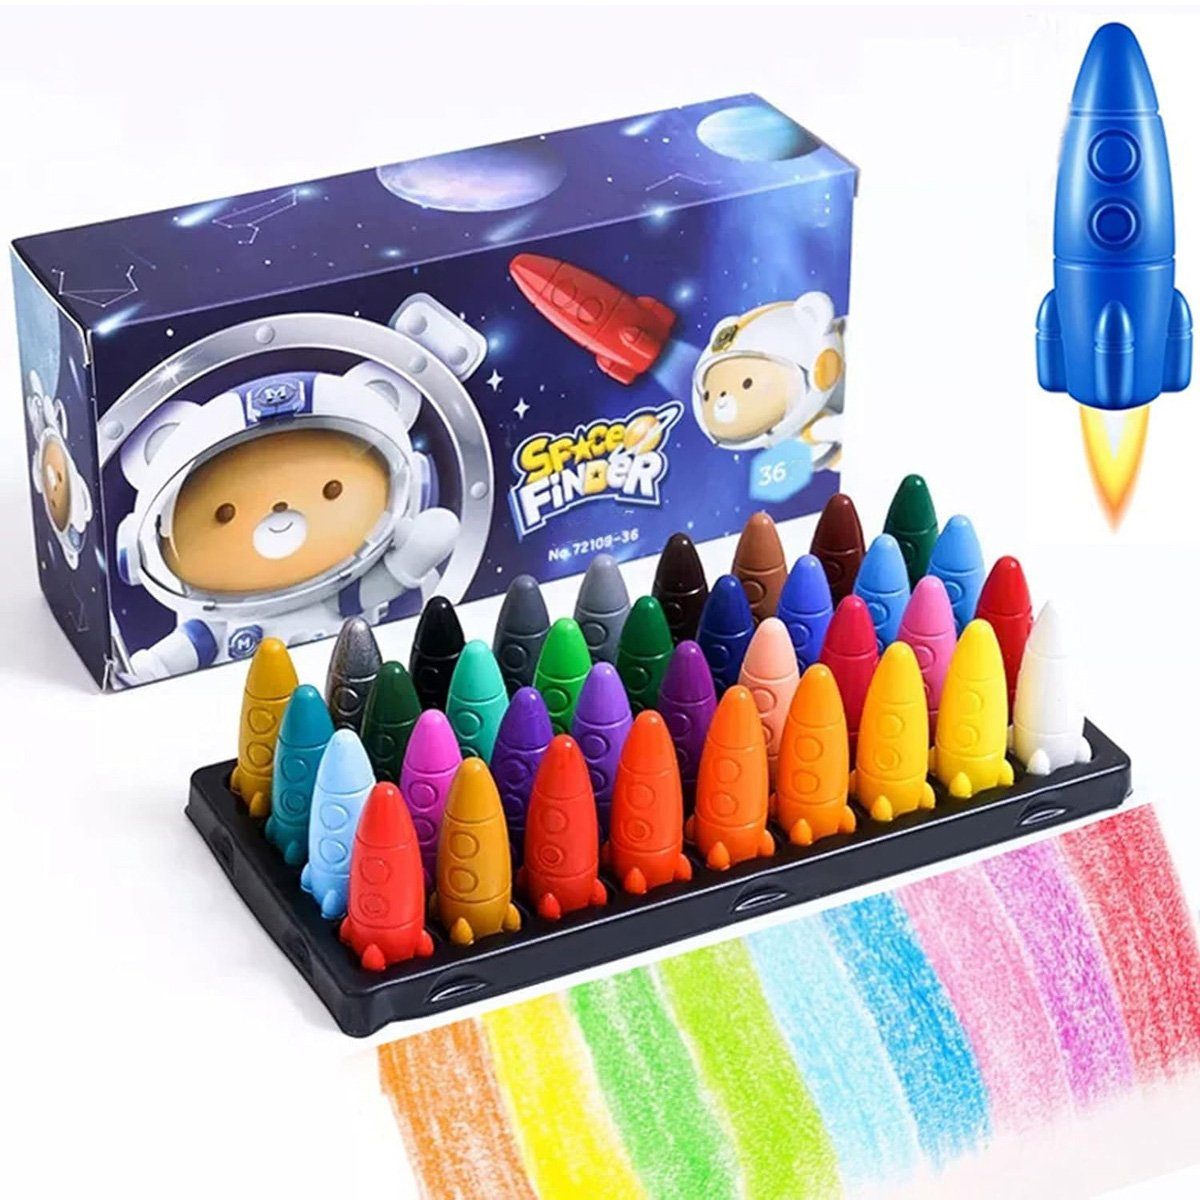 götäzer Wachsmalstift Mehrfarbige Weltraummalstifte,ungiftige Buntstifte für Kinder-36 stuck, (36-tlg), Leicht zu halten, sicheres Material, farbenfrohes Stift-Geschenkset